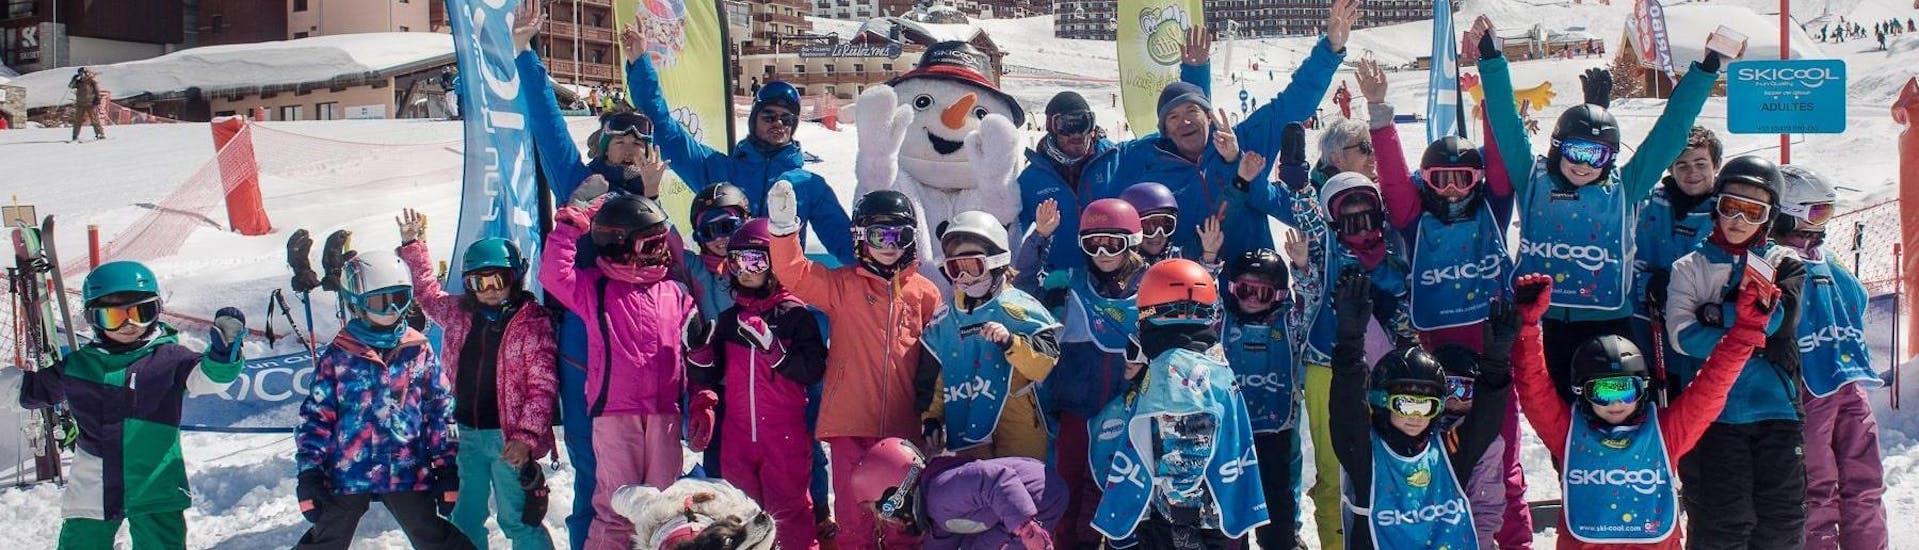 Un grupo de niños está emocionado de comenzar sus clases de esquí con la escuela de esquí Ski Cool, en la estación de esquí de Val Thorens.